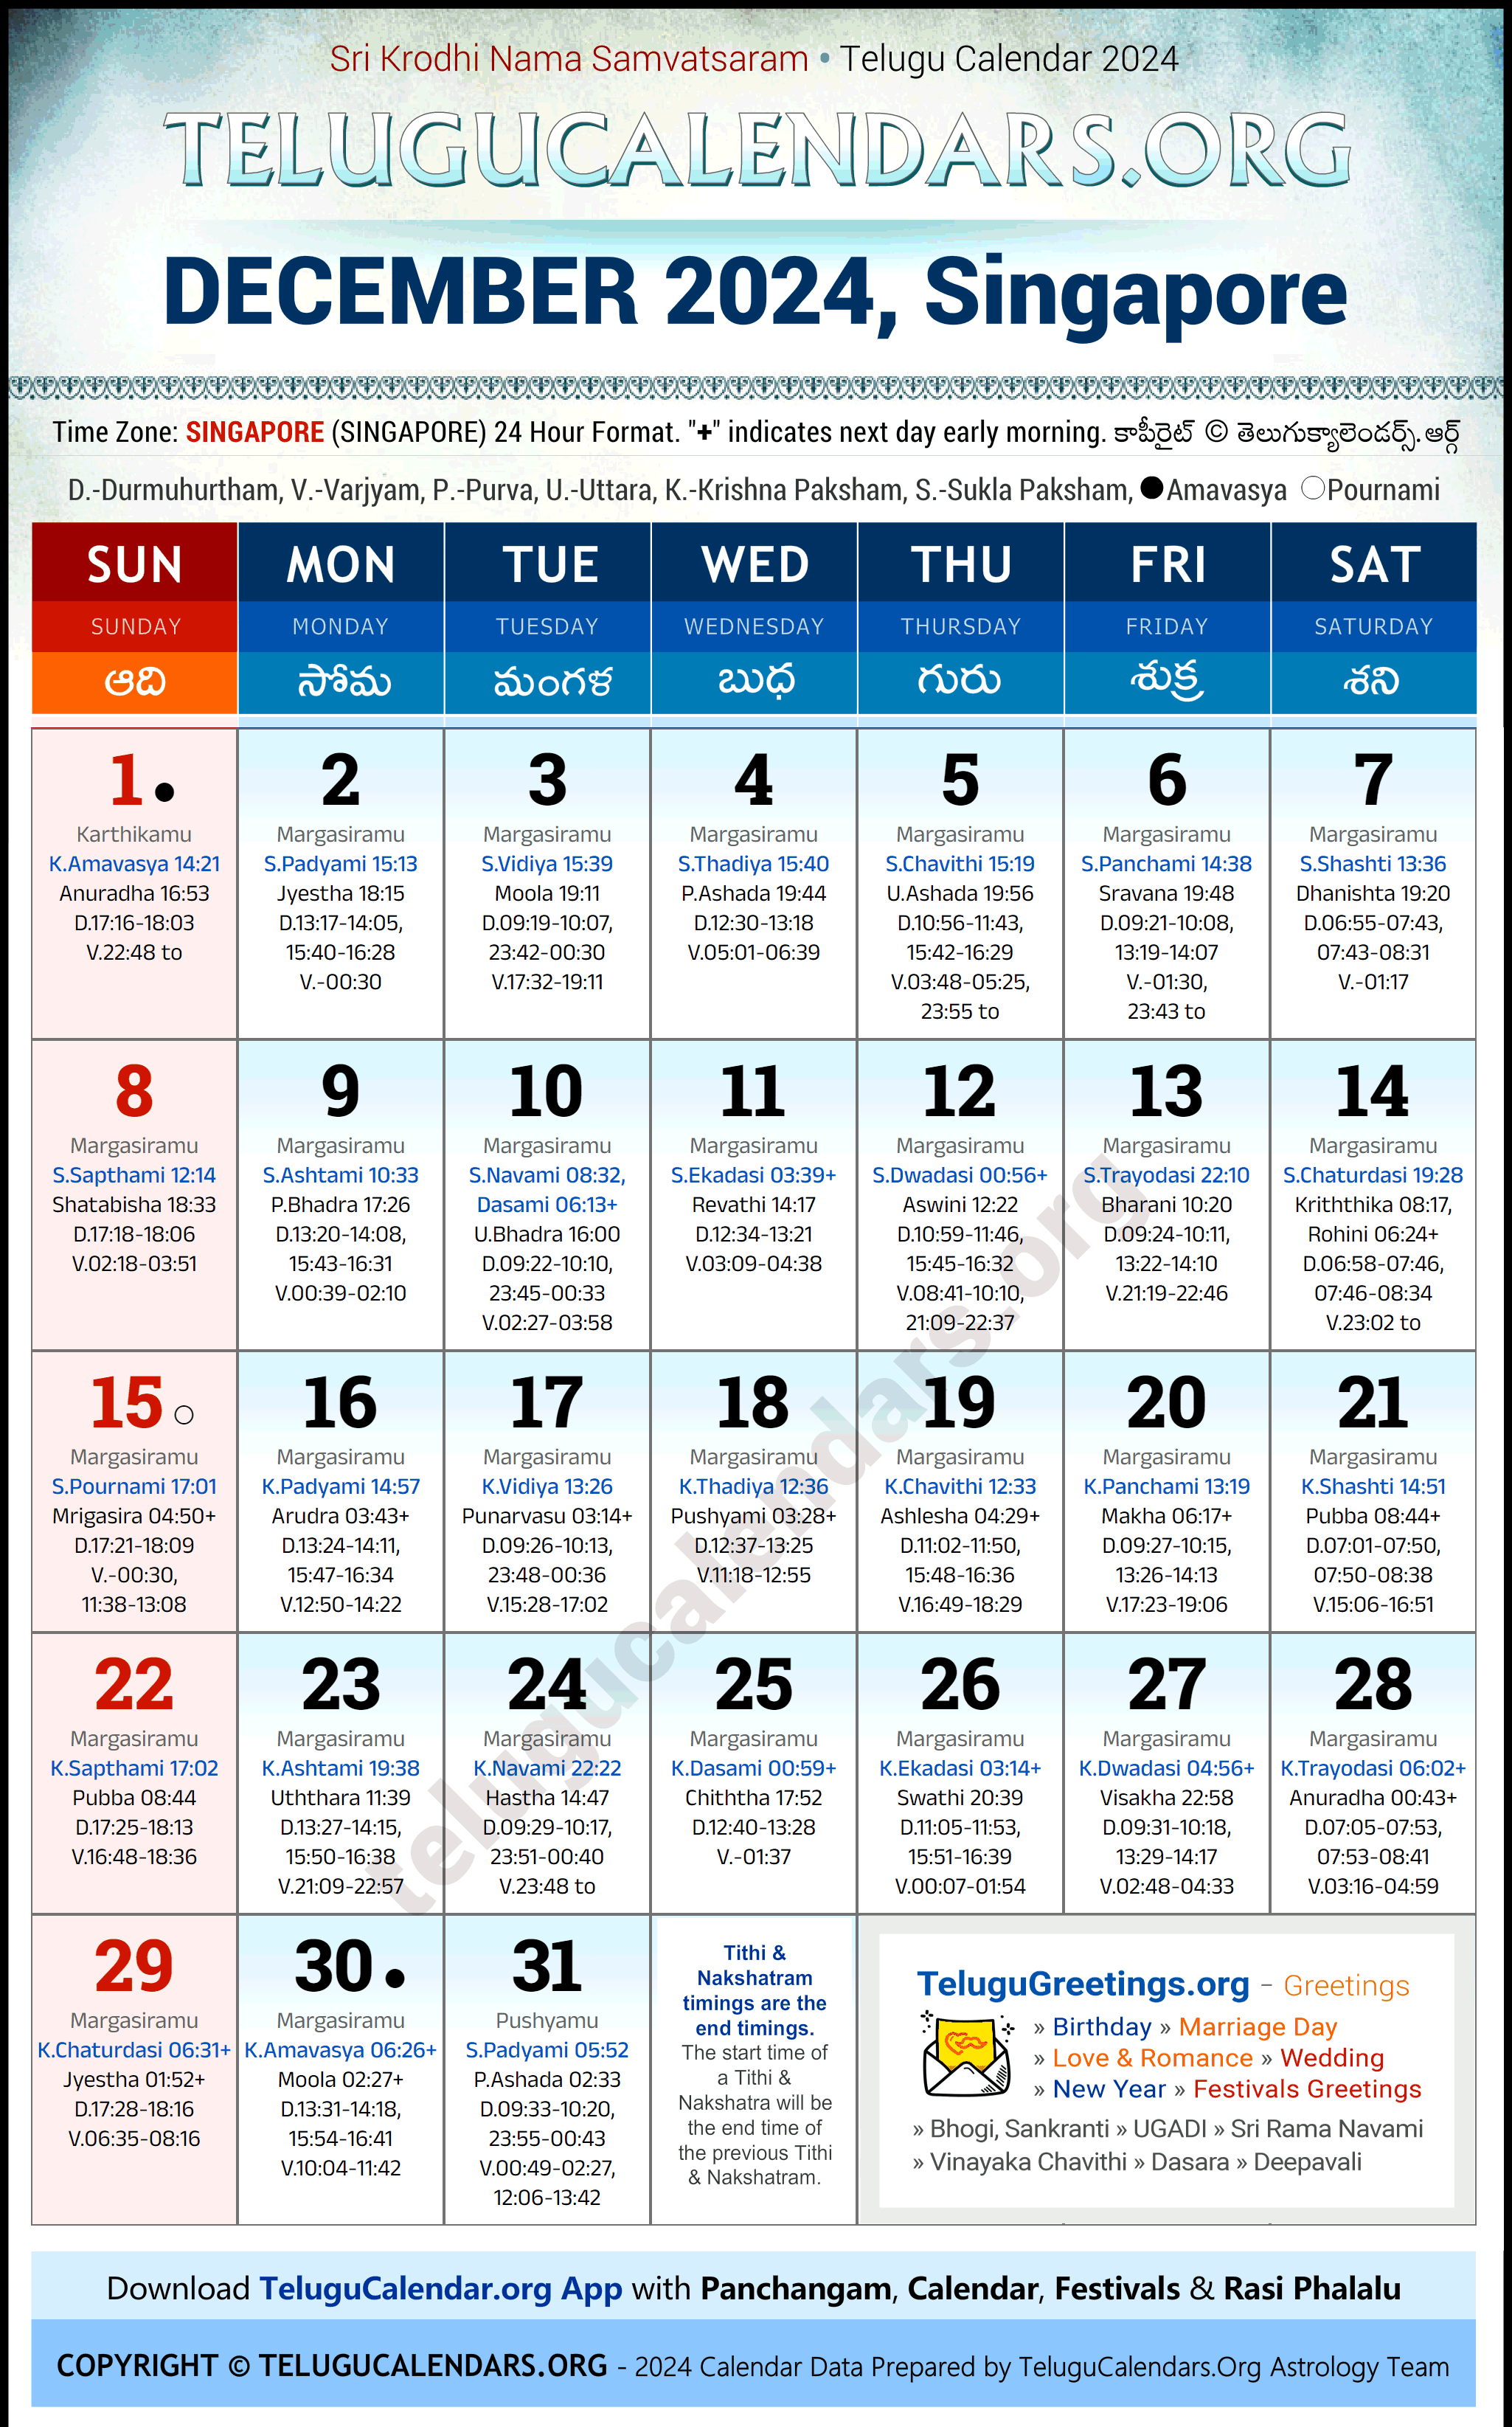 Telugu Calendar 2024 December Festivals for Singapore